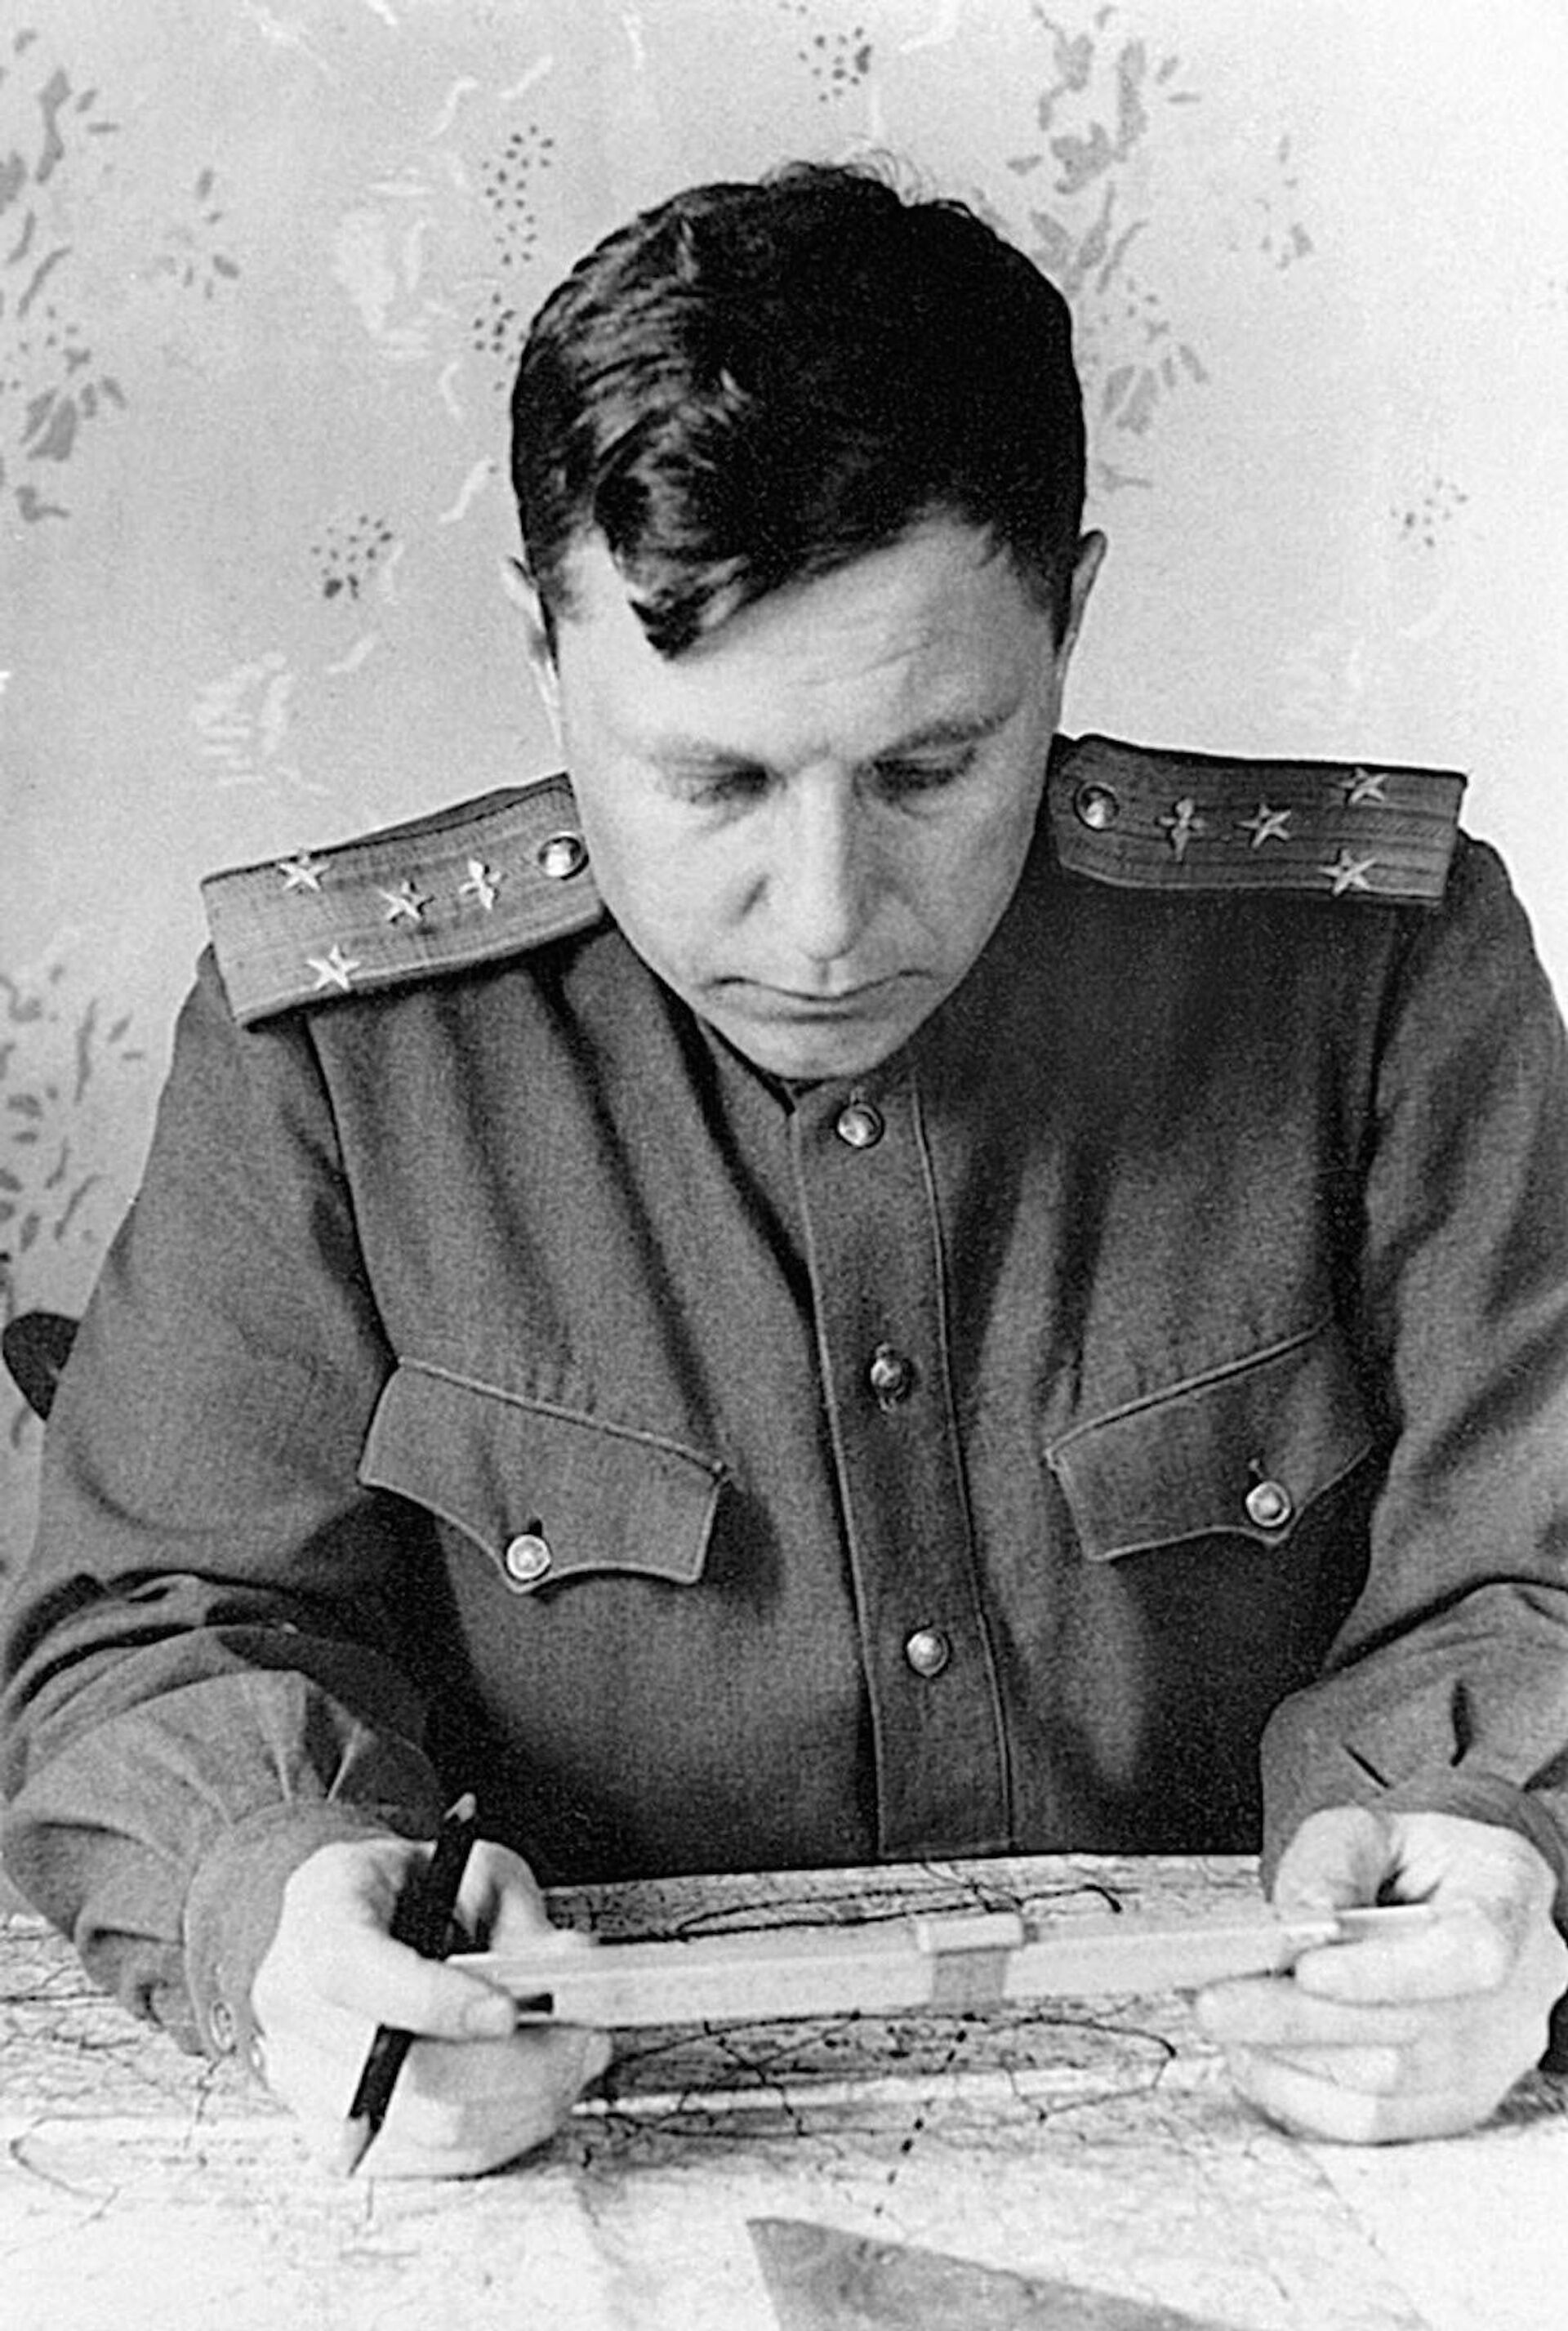 Полковник Покрышкин готовится к боевому вылету, 1945 год - Sputnik Молдова, 1920, 20.07.2021